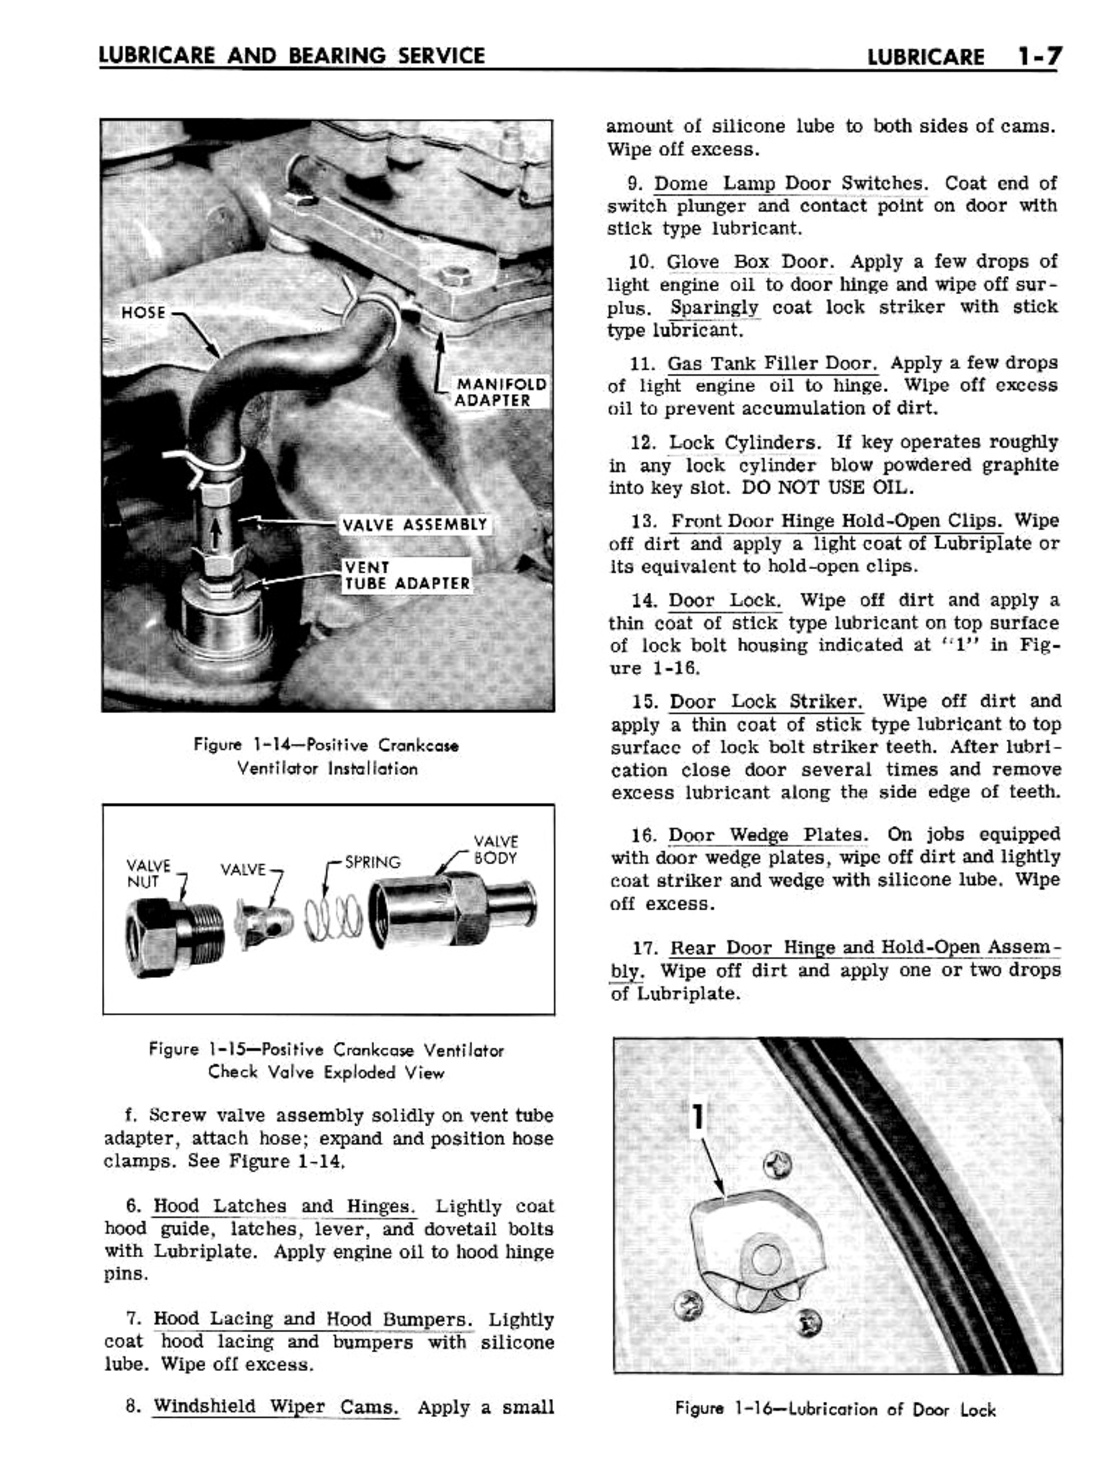 n_02 1961 Buick Shop Manual - Lubricare-007-007.jpg